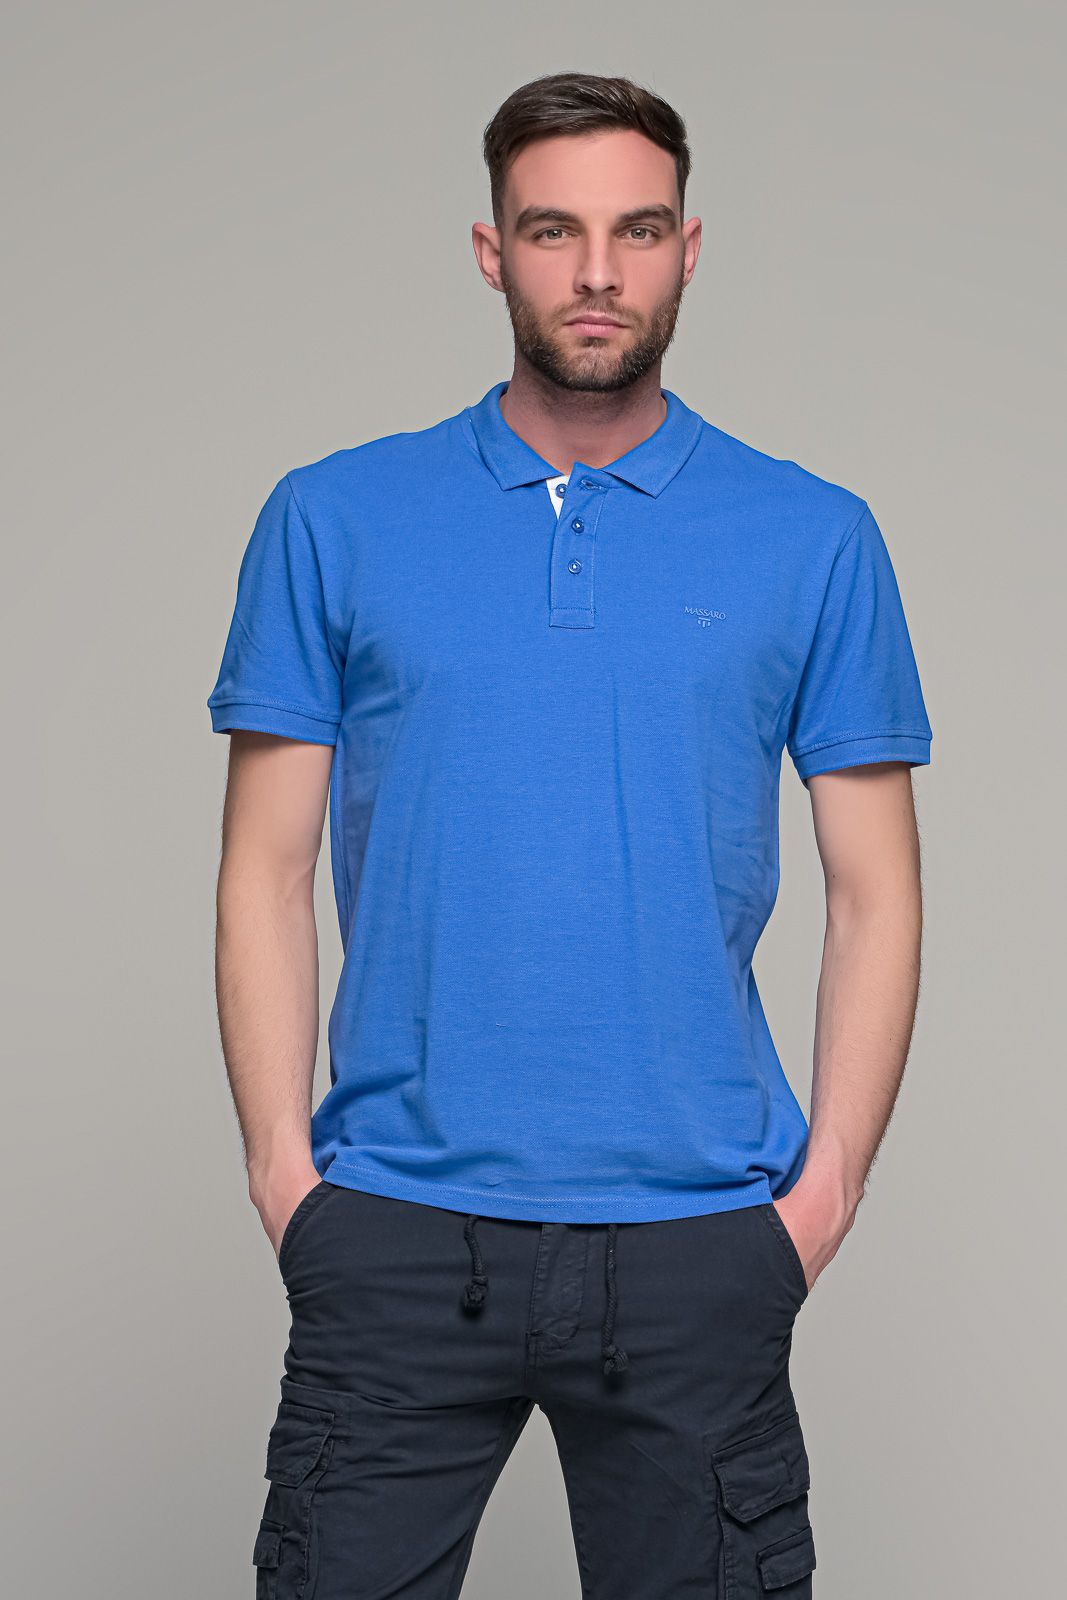 Μπλε ραφ ανδρικό πόλο μπλουζάκι MASSARO με λευκή πατιλέτα - Regular fit